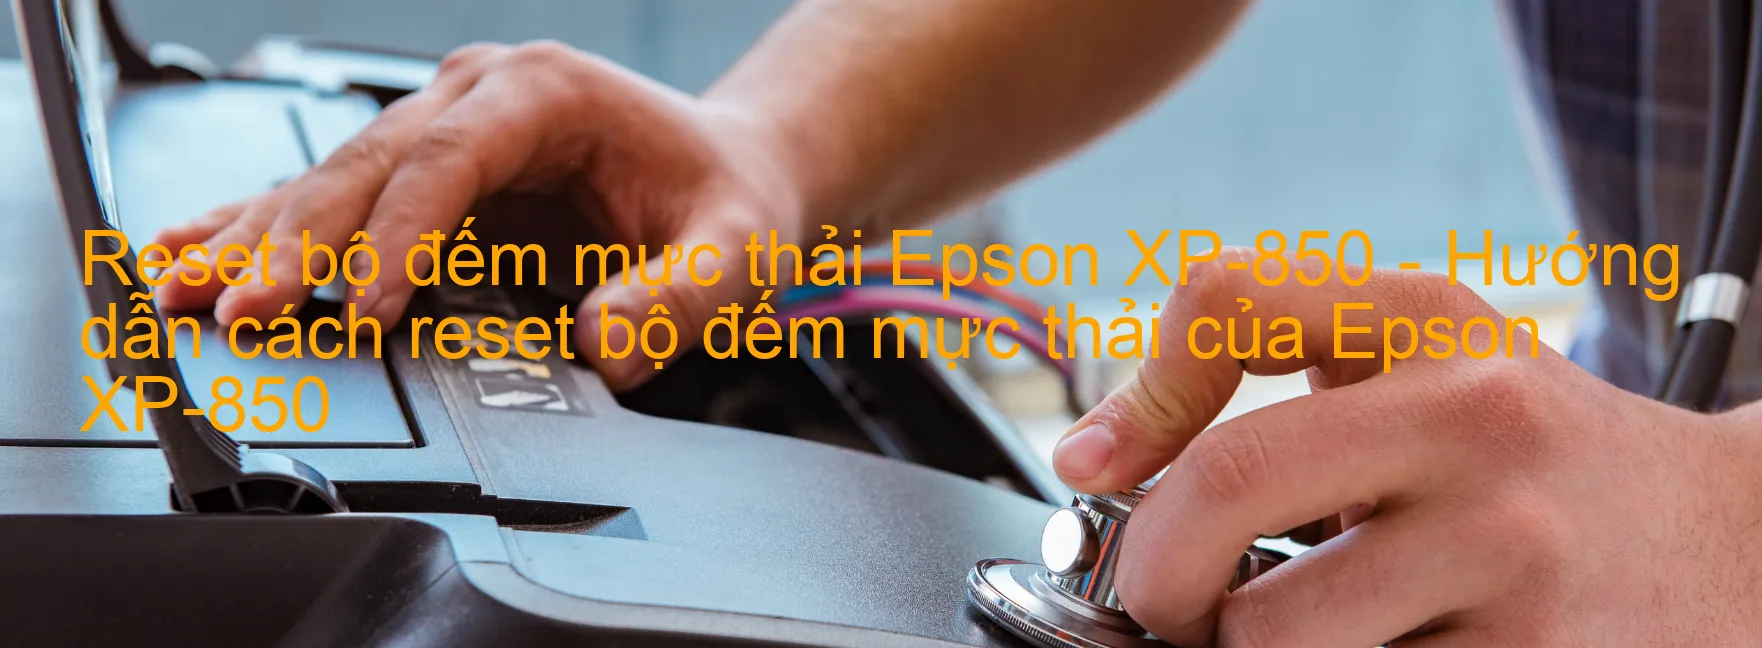 Reset bộ đếm mực thải Epson XP-850 - Hướng dẫn cách reset bộ đếm mực thải của Epson XP-850